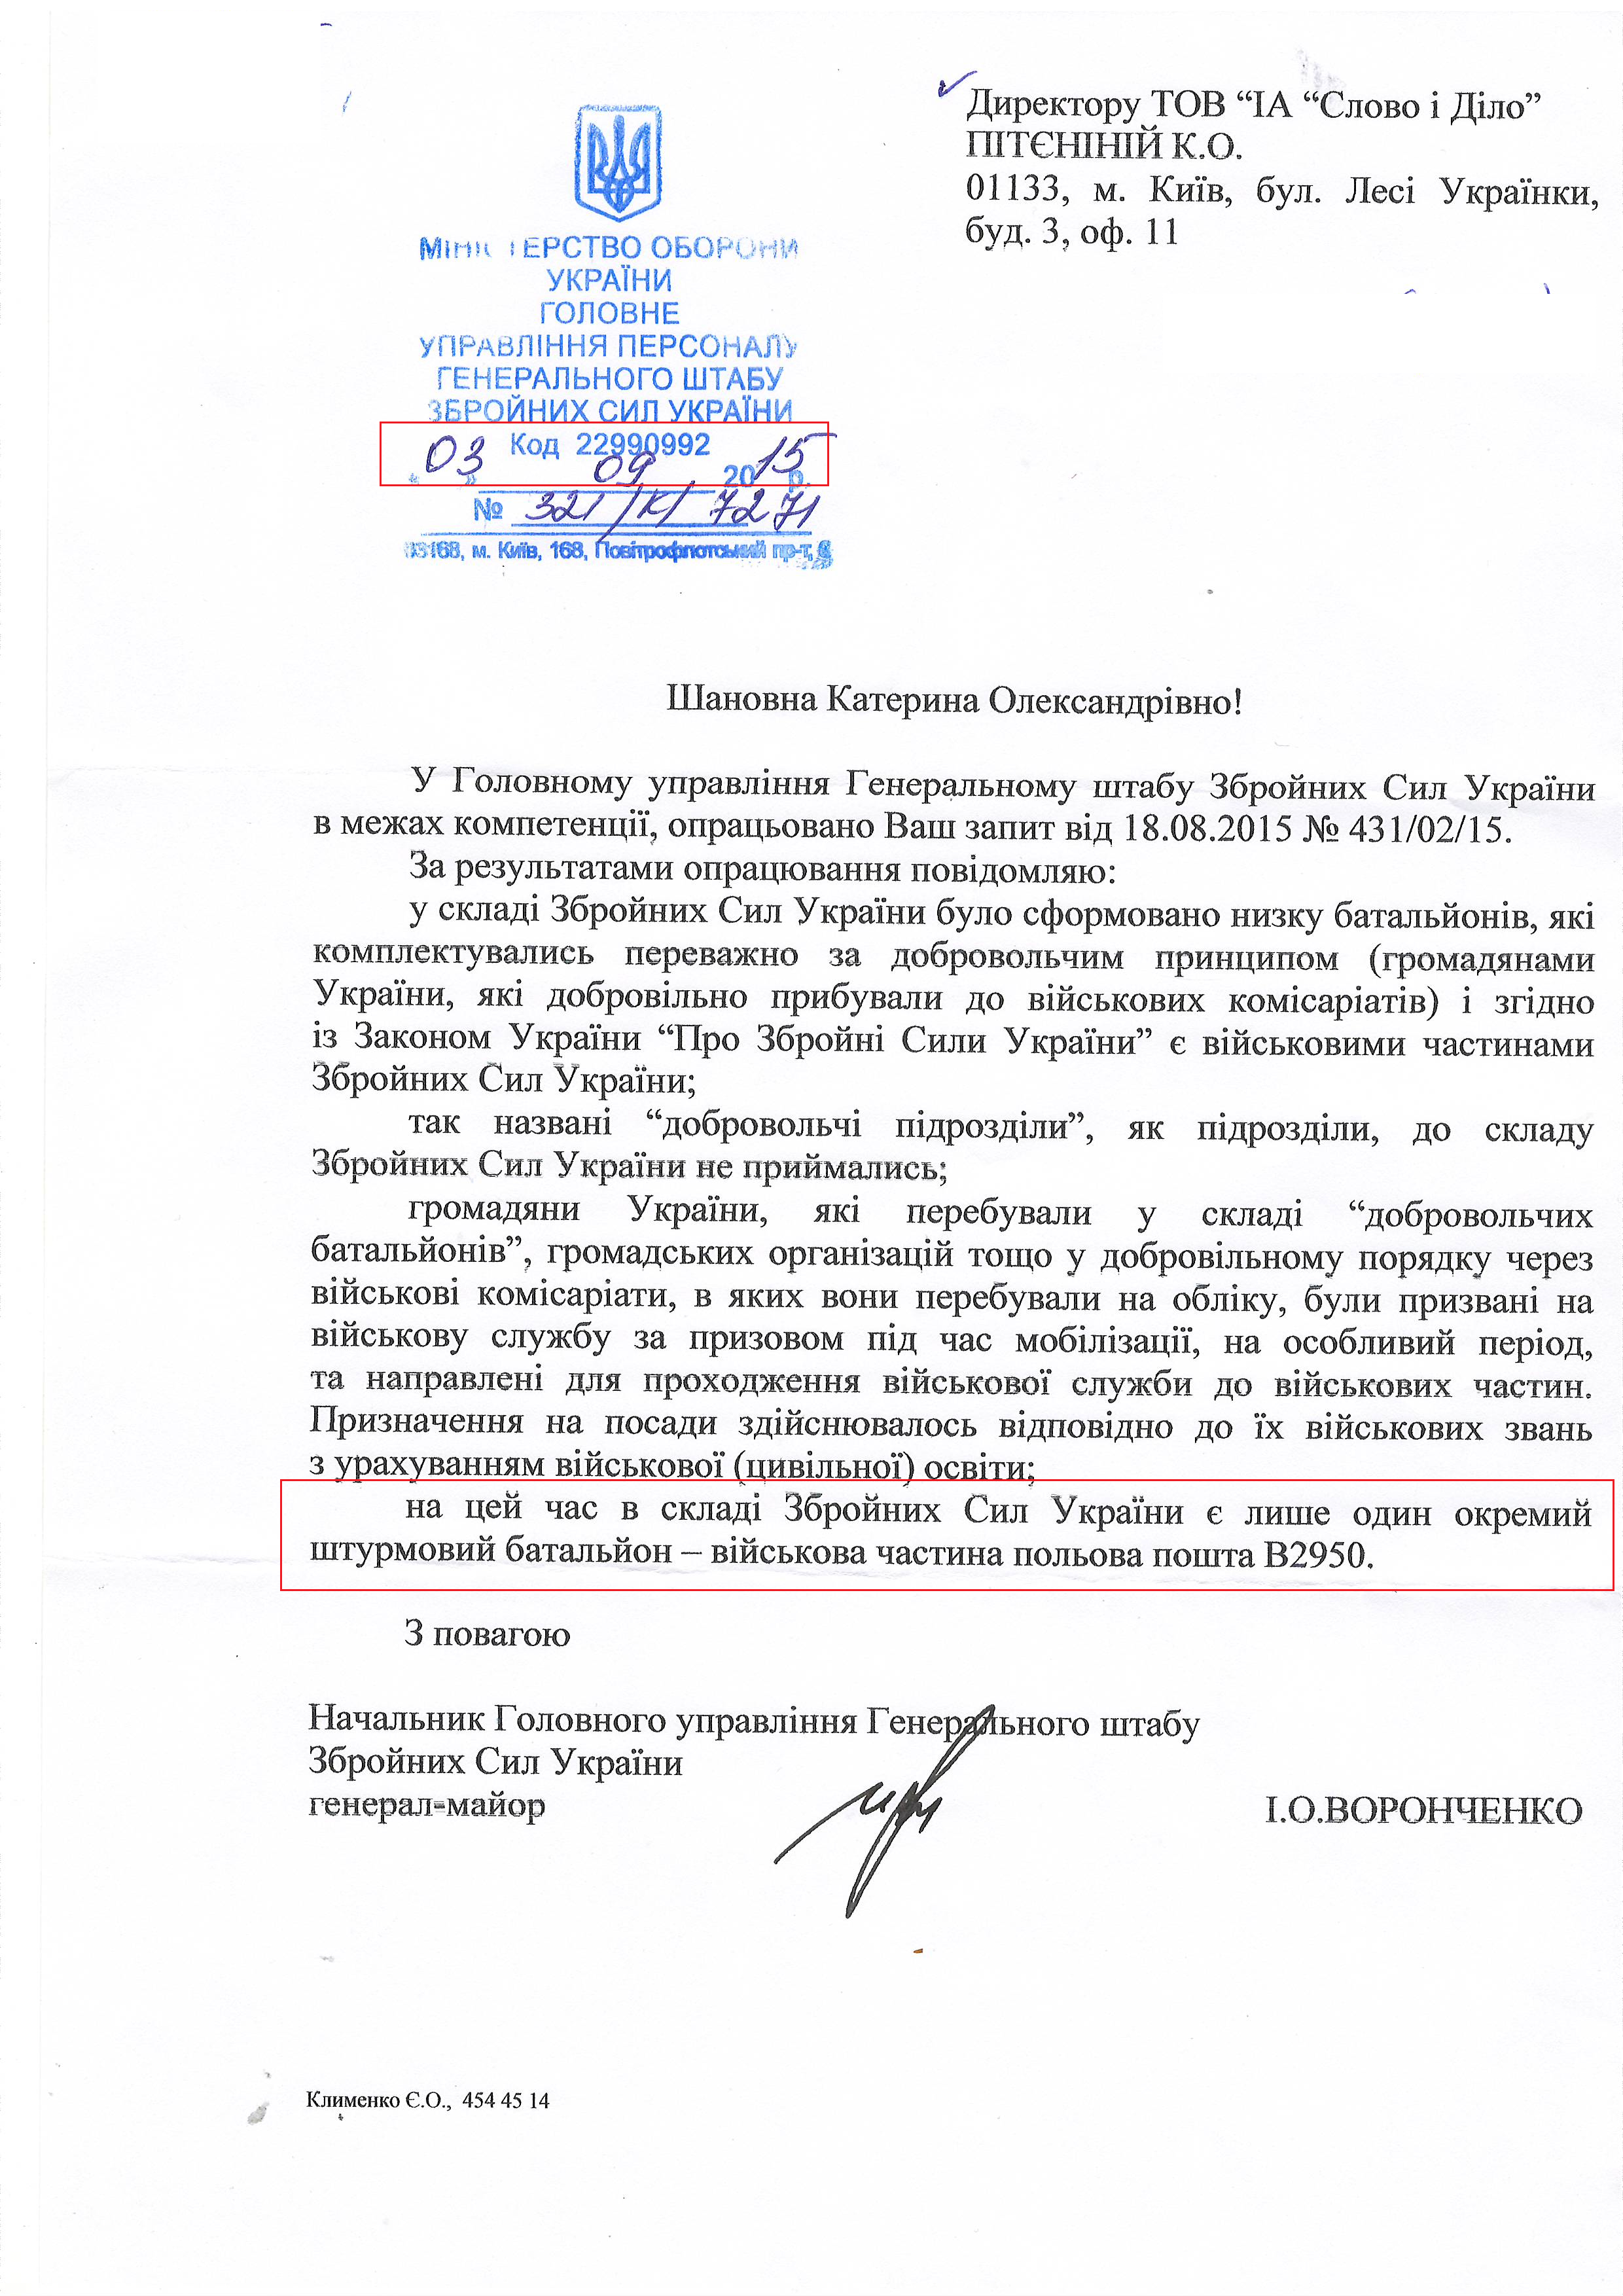 Лист Генерального штабу Збройних сил України від 3 вересня 2015 року